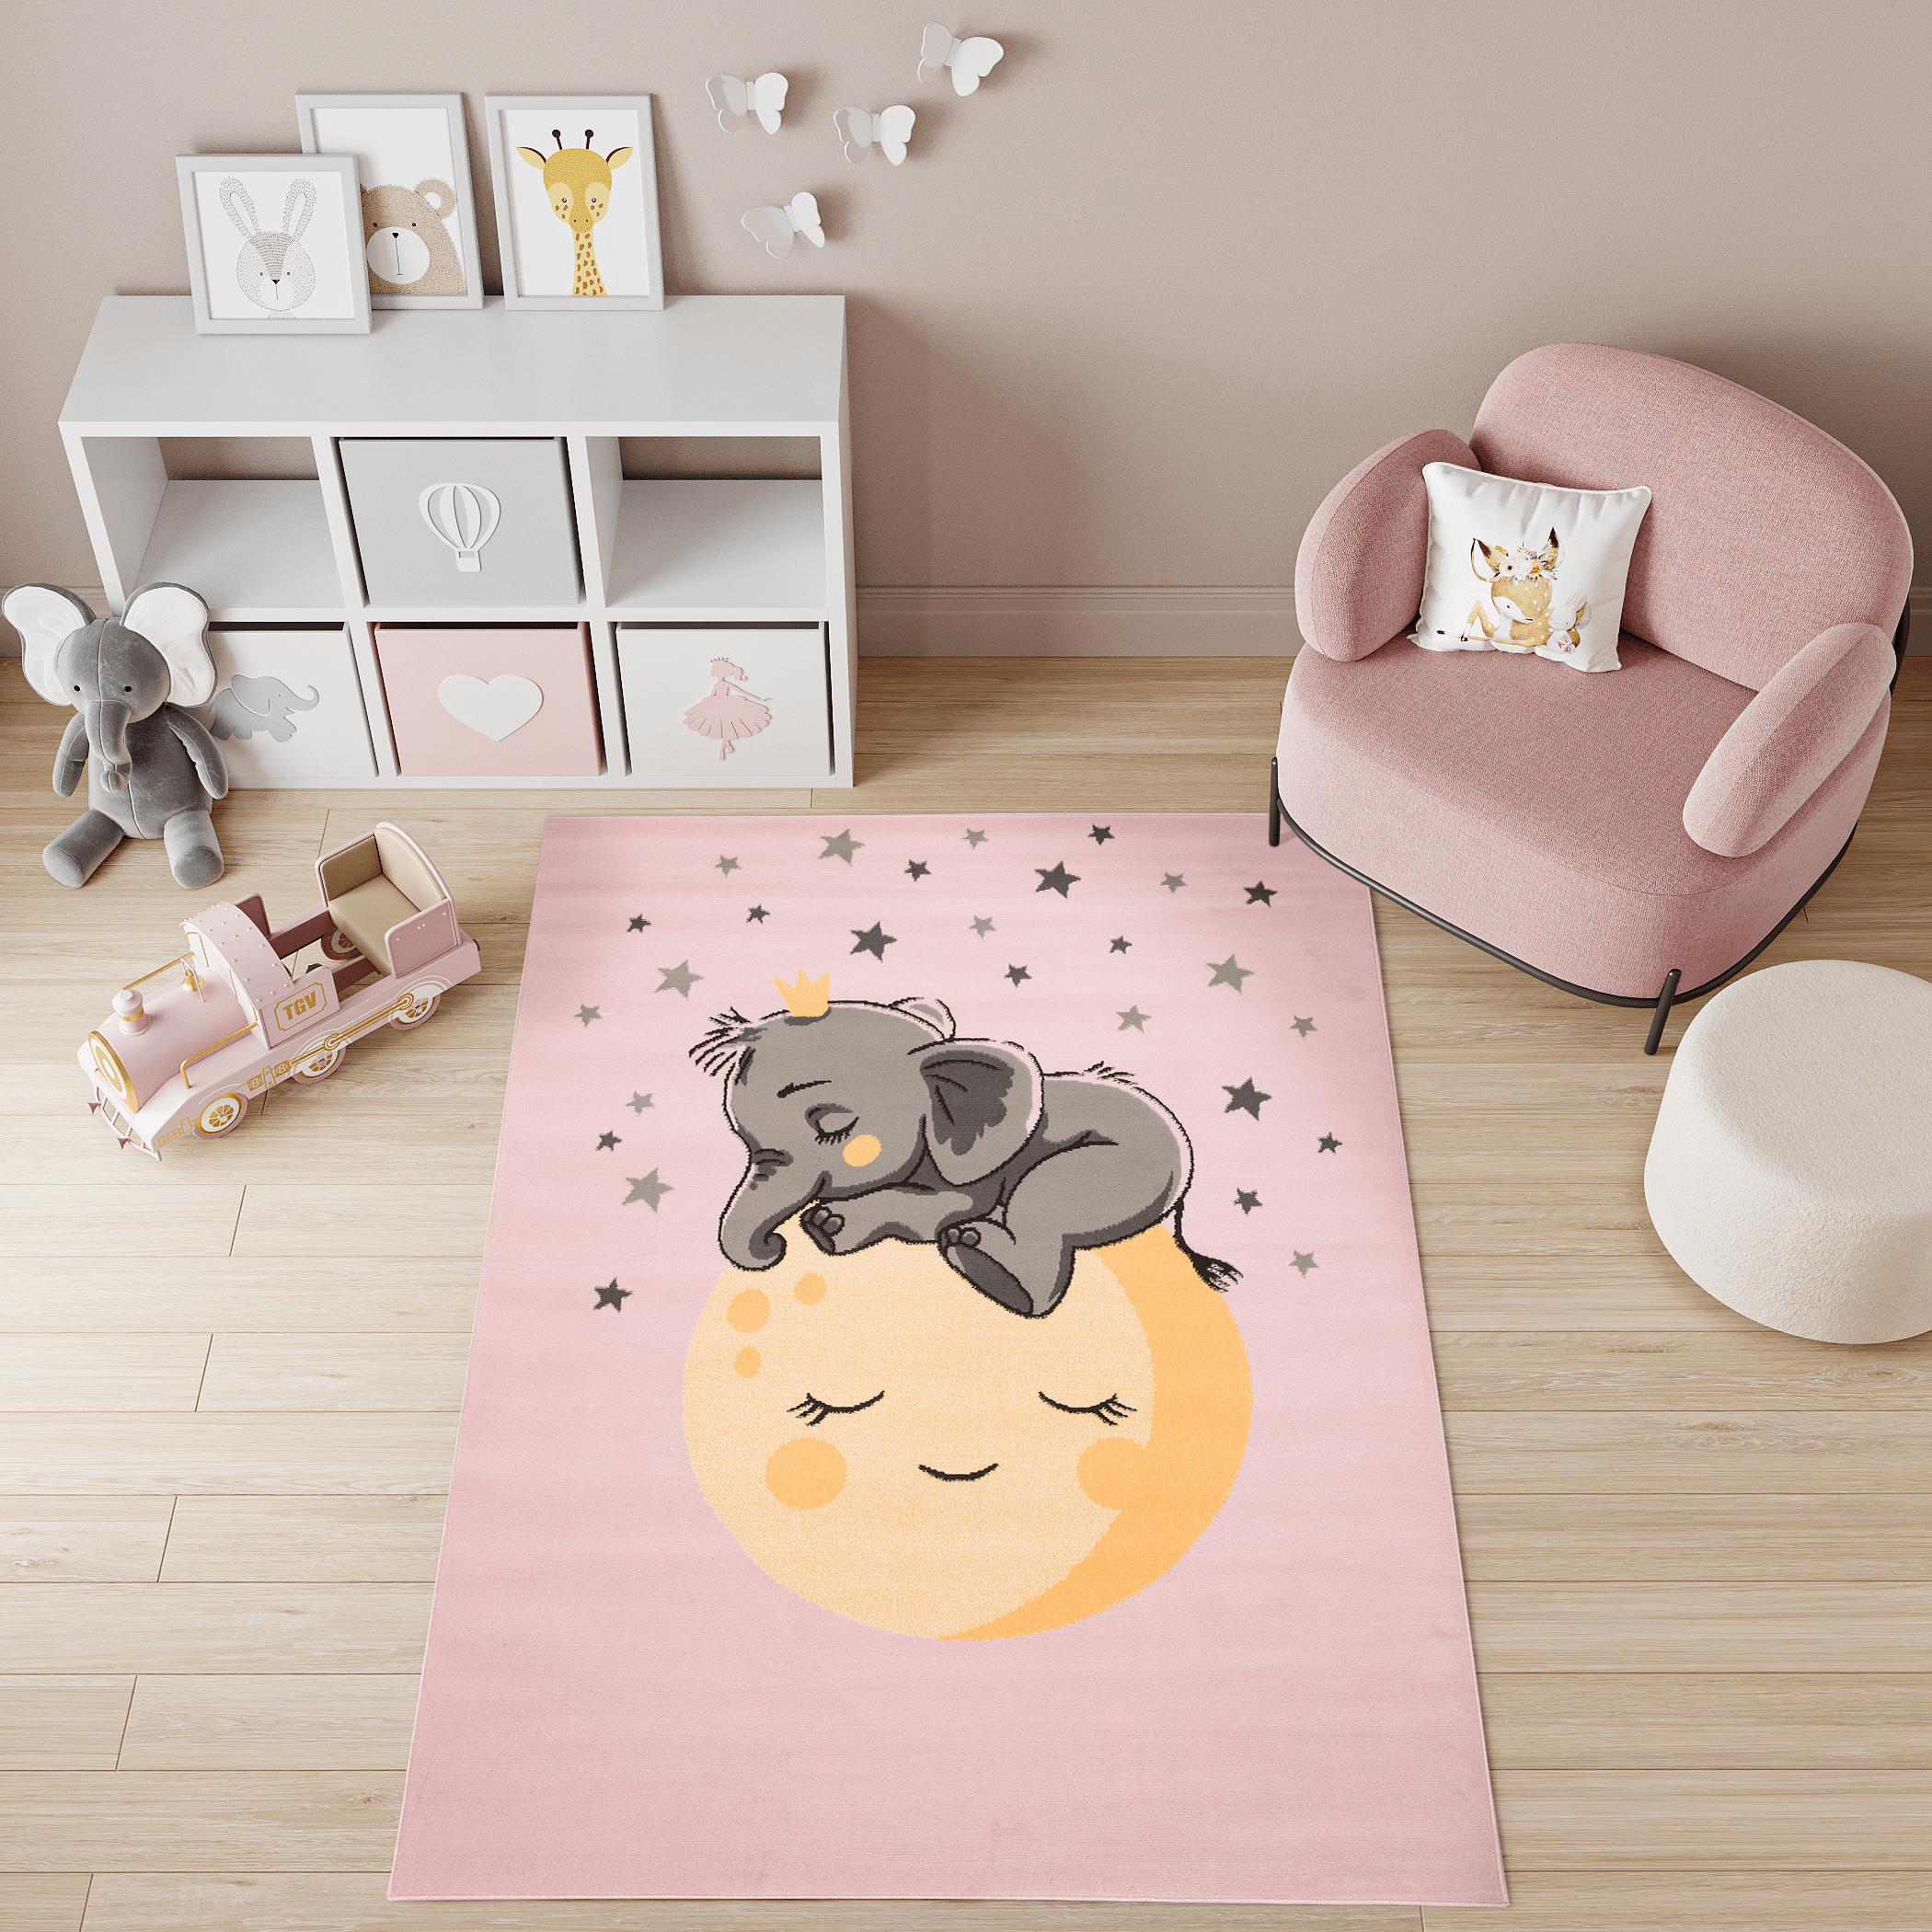 Gris y rosa, los colores de una alfombra para el cuarto del bebe •